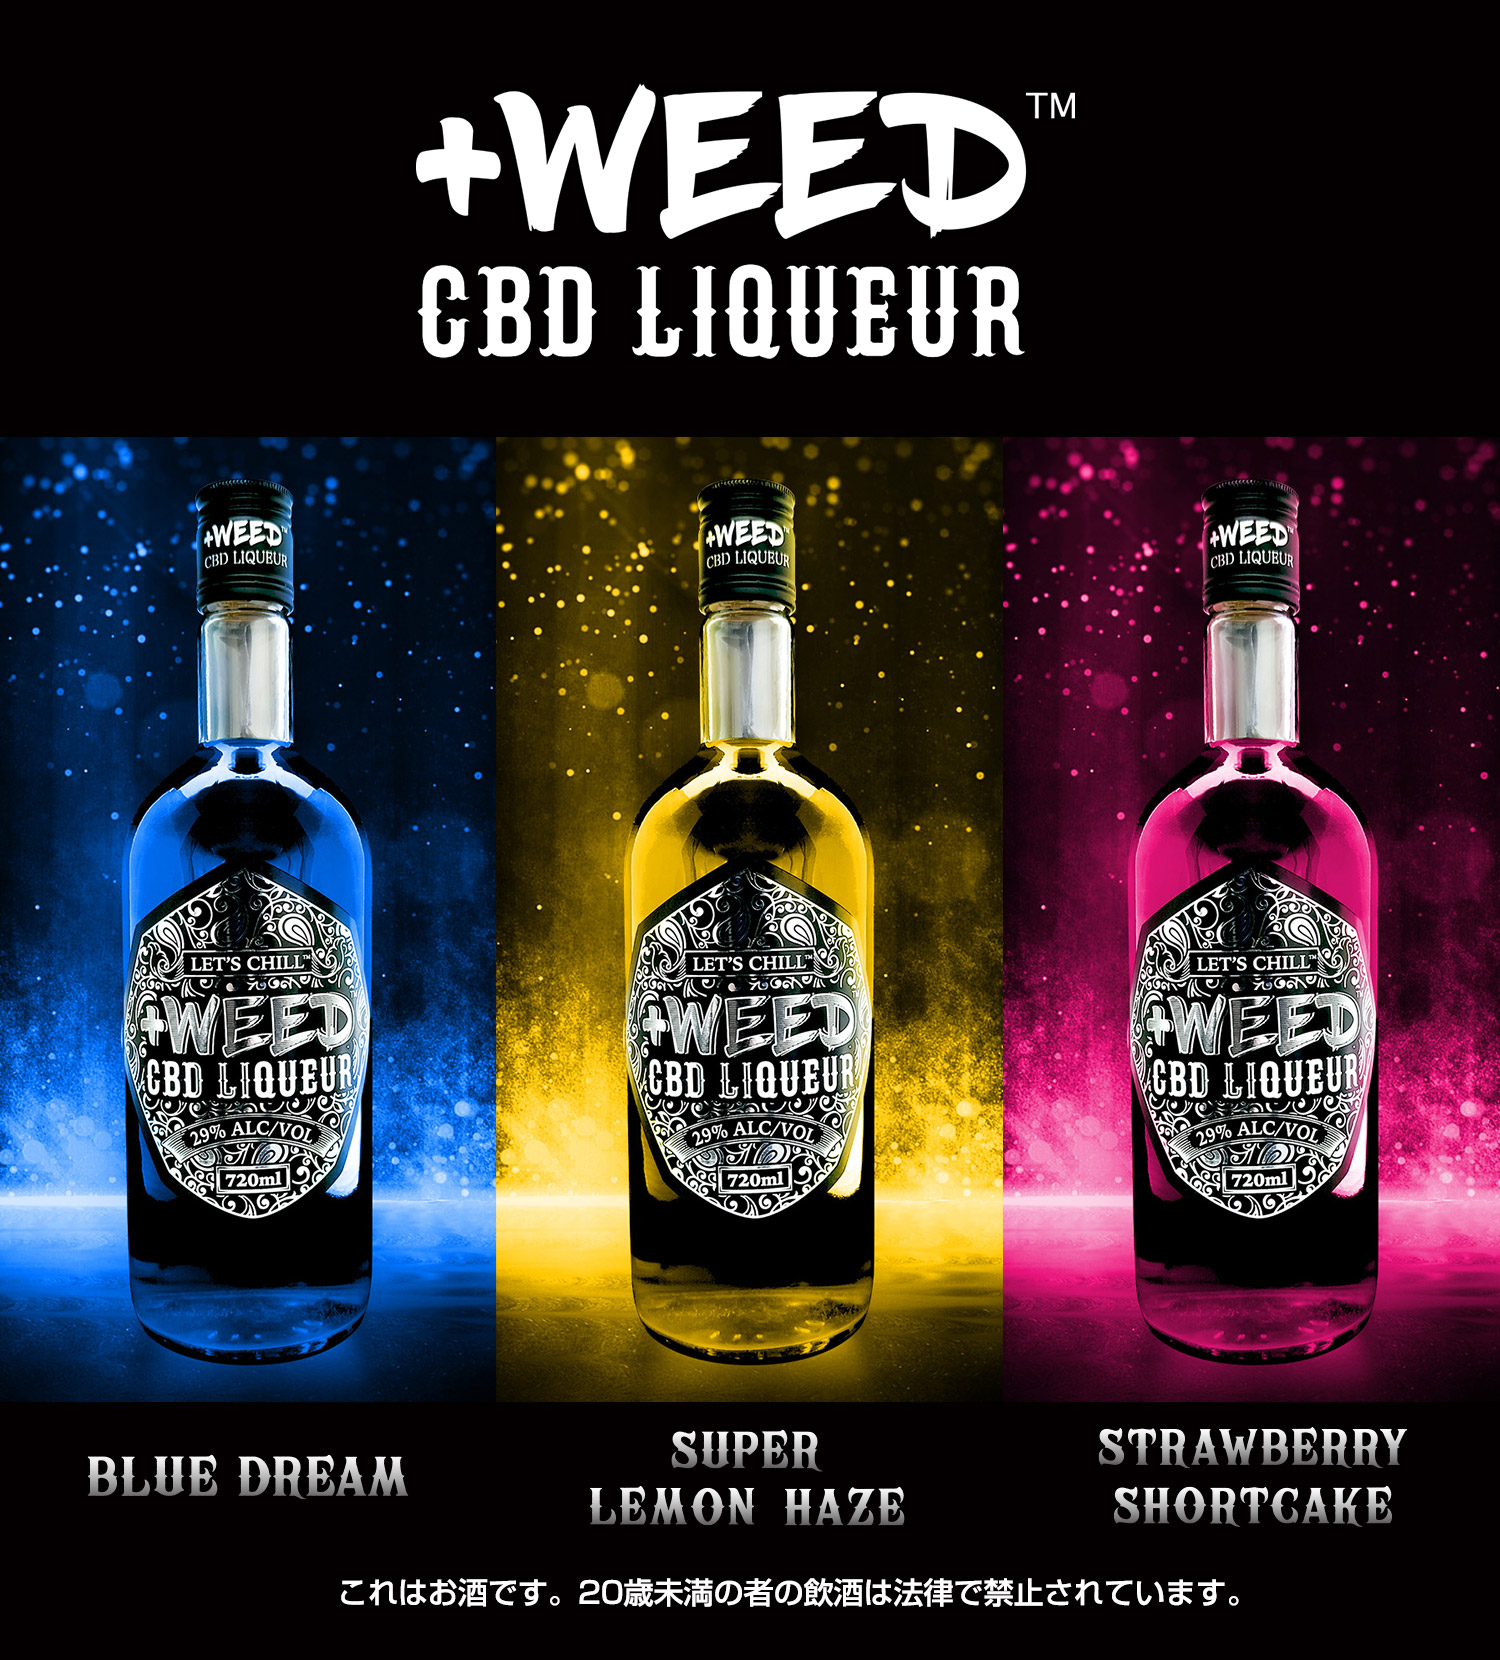 「+WEED CBD LIQUEUR」の新フレーバー